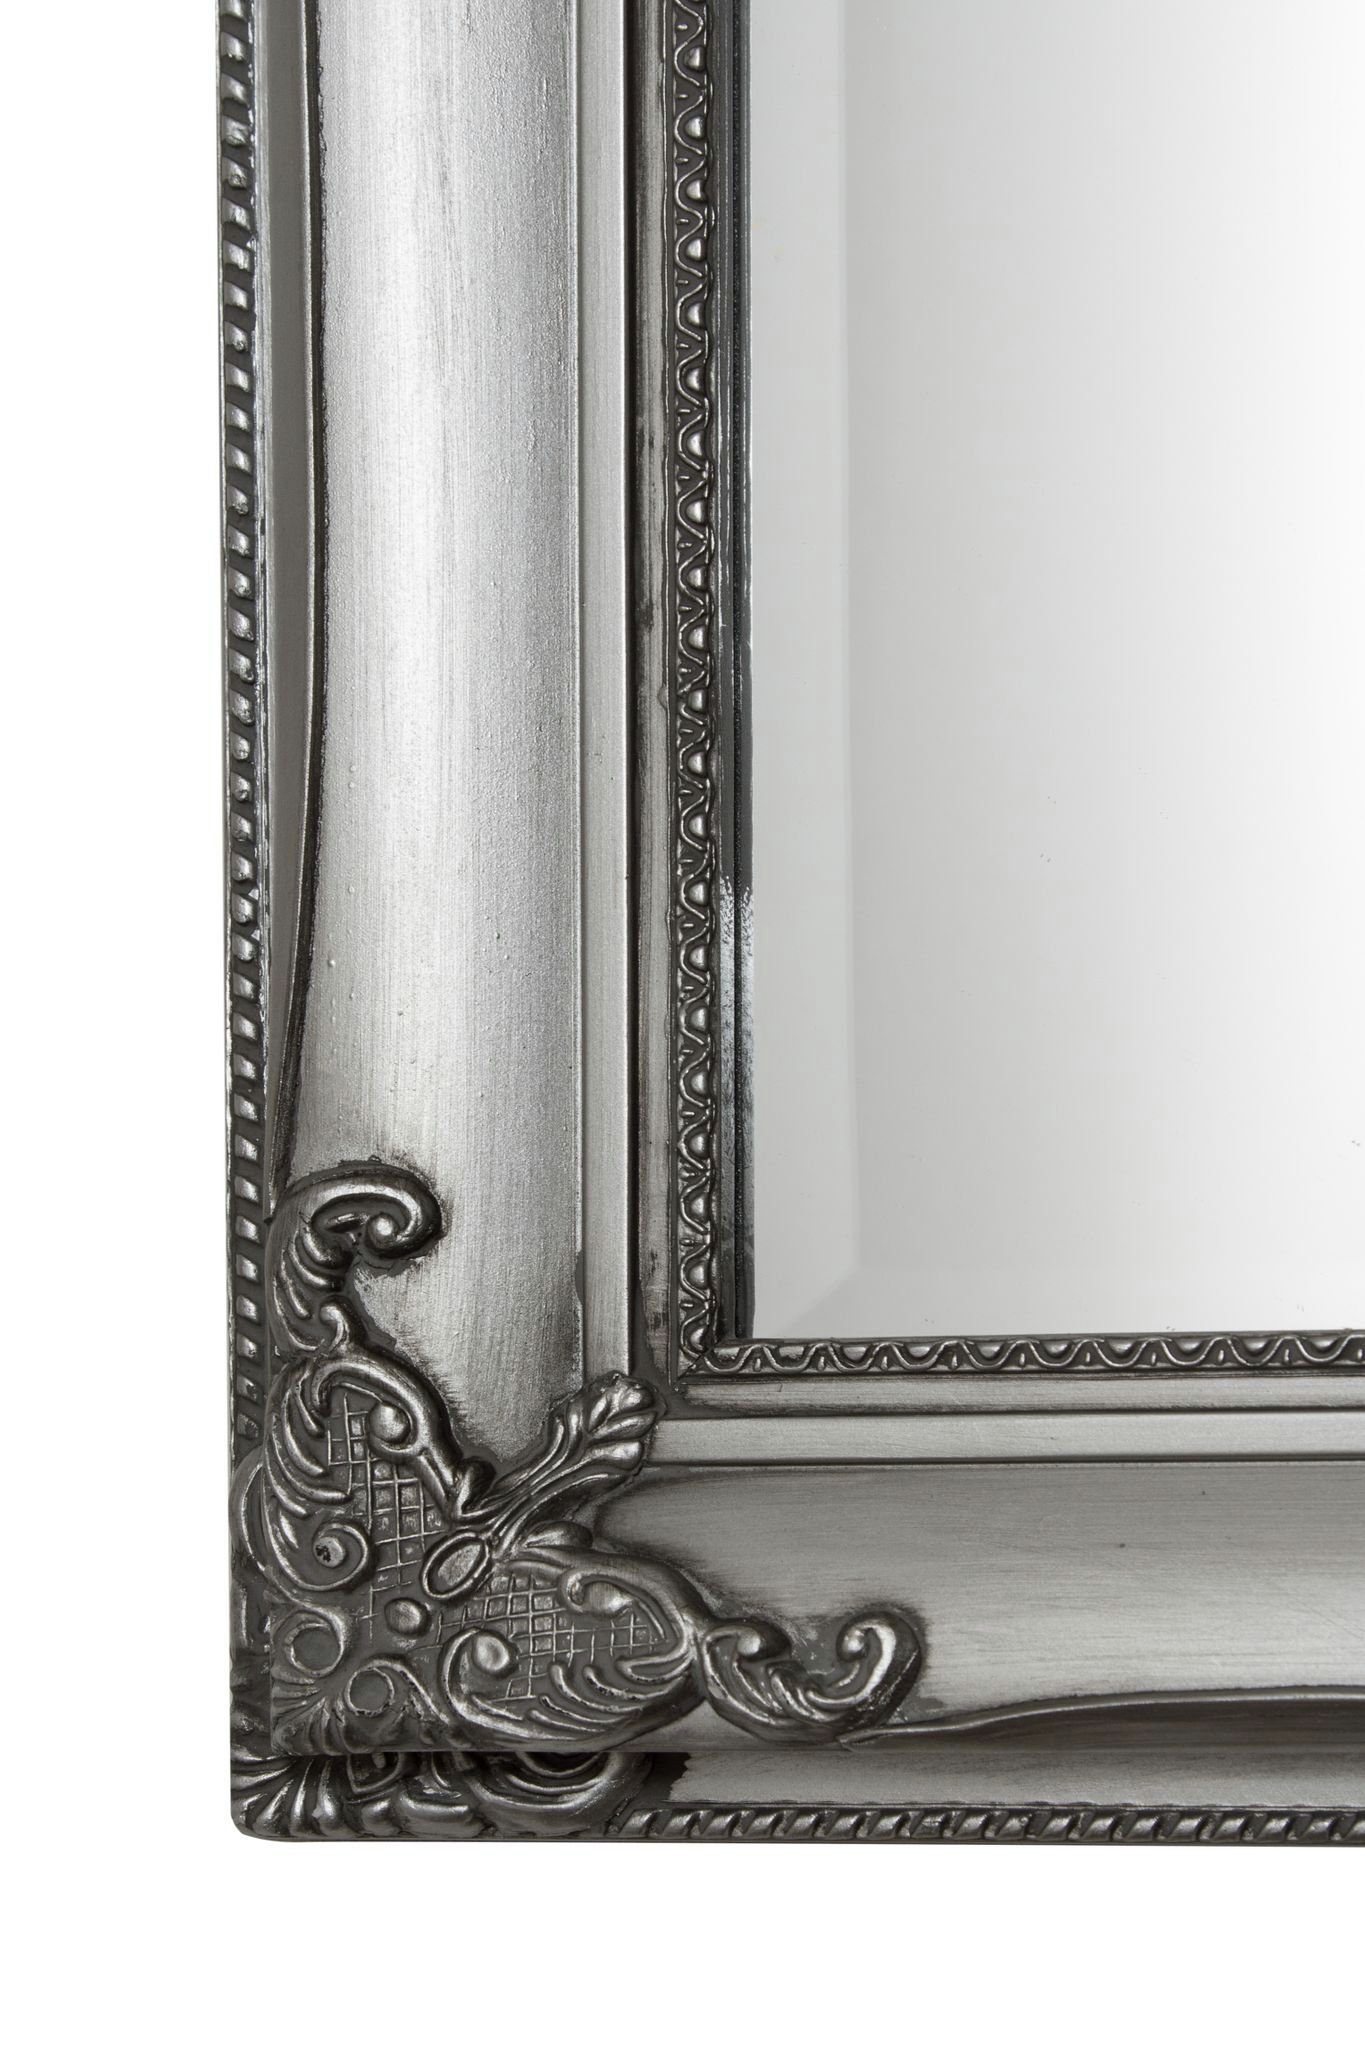 150x60x7 silber Wandspiegel Ganzkörper Spiegel: Wandspiegel Landhausstil elbmöbel cm 150x60x7cm,